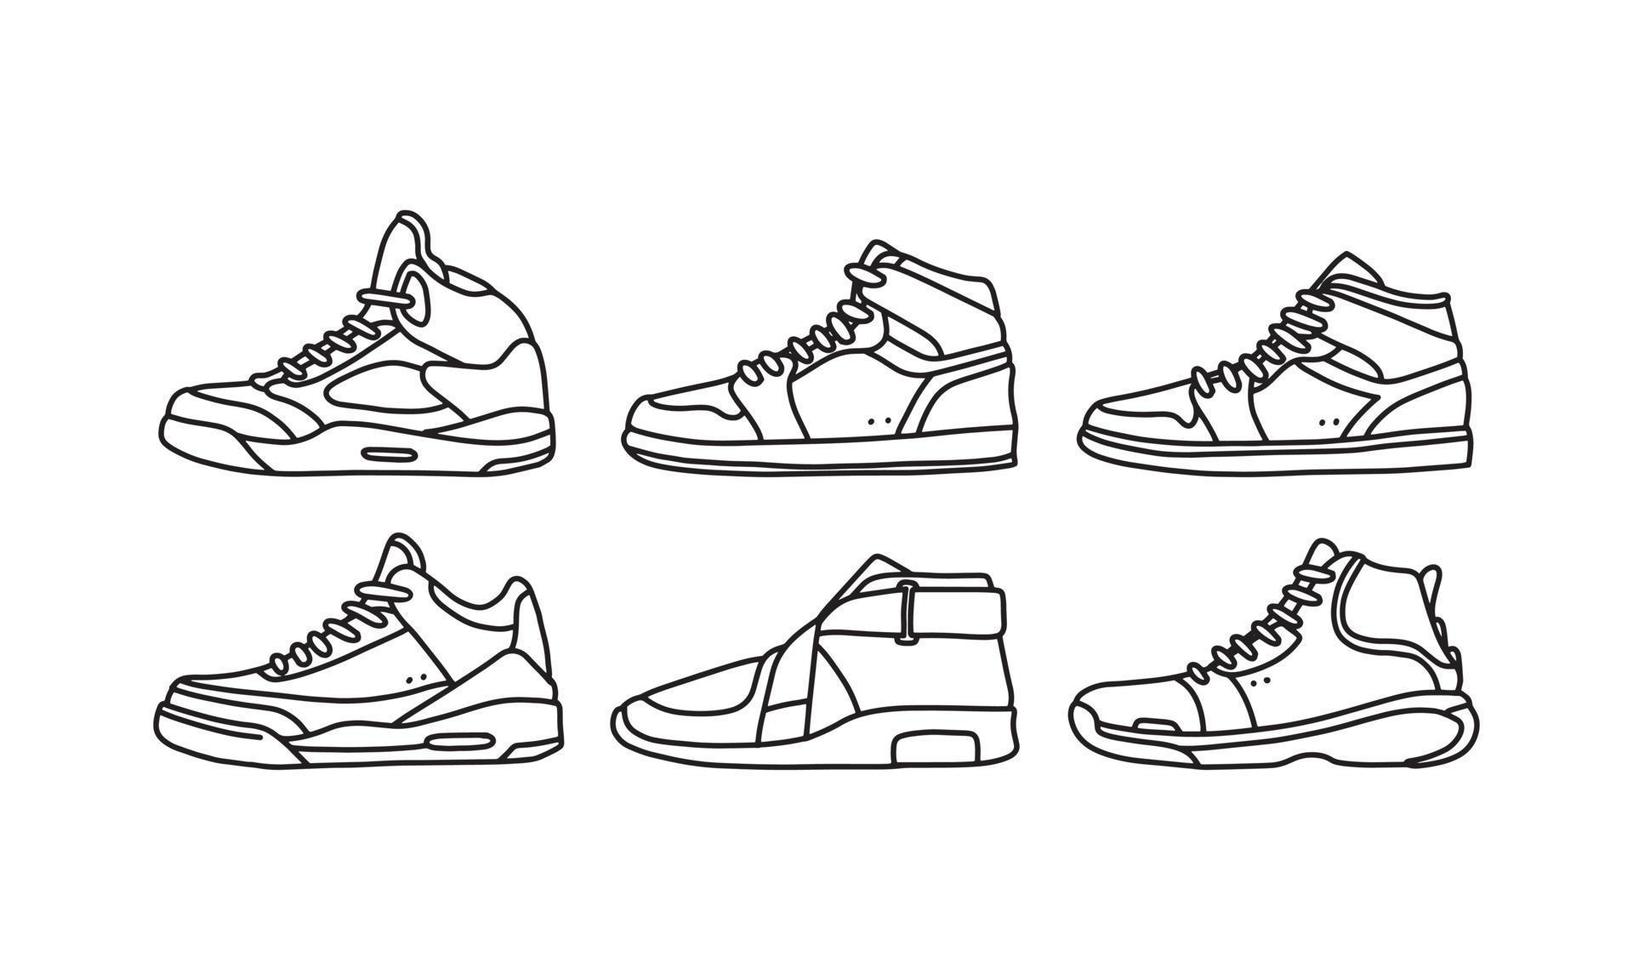 conjunto de zapatos deportivos y de estilo de vida, colección dibujada a mano de vector de zapatillas, icono de lineart de zapatos. nueva ilustración de zapato para deporte y elemento de diseño de marca